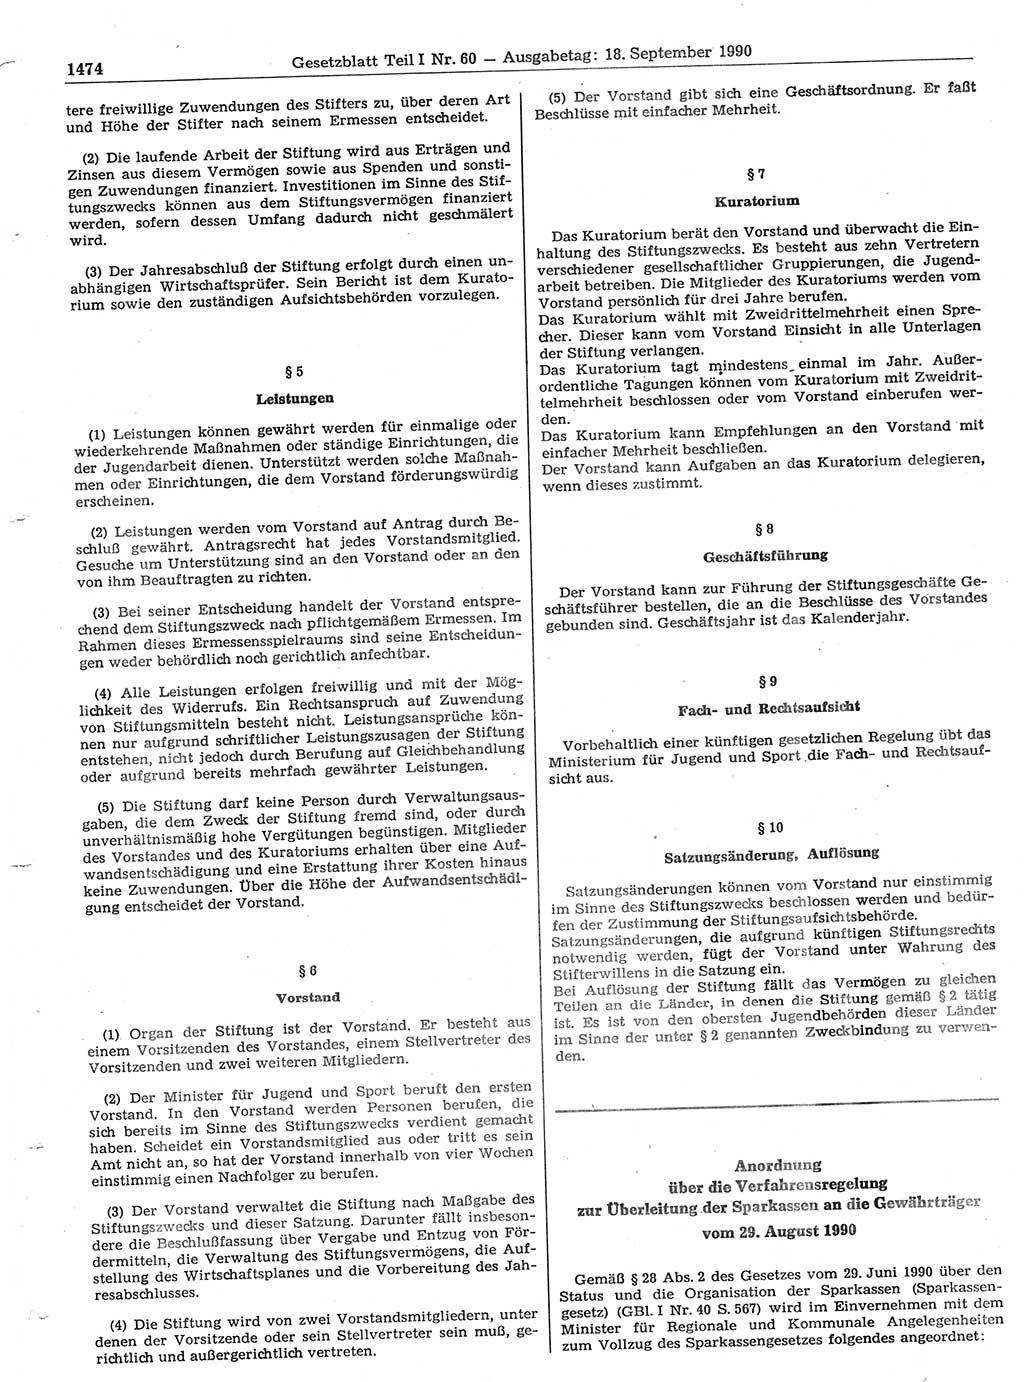 Gesetzblatt (GBl.) der Deutschen Demokratischen Republik (DDR) Teil Ⅰ 1990, Seite 1474 (GBl. DDR Ⅰ 1990, S. 1474)